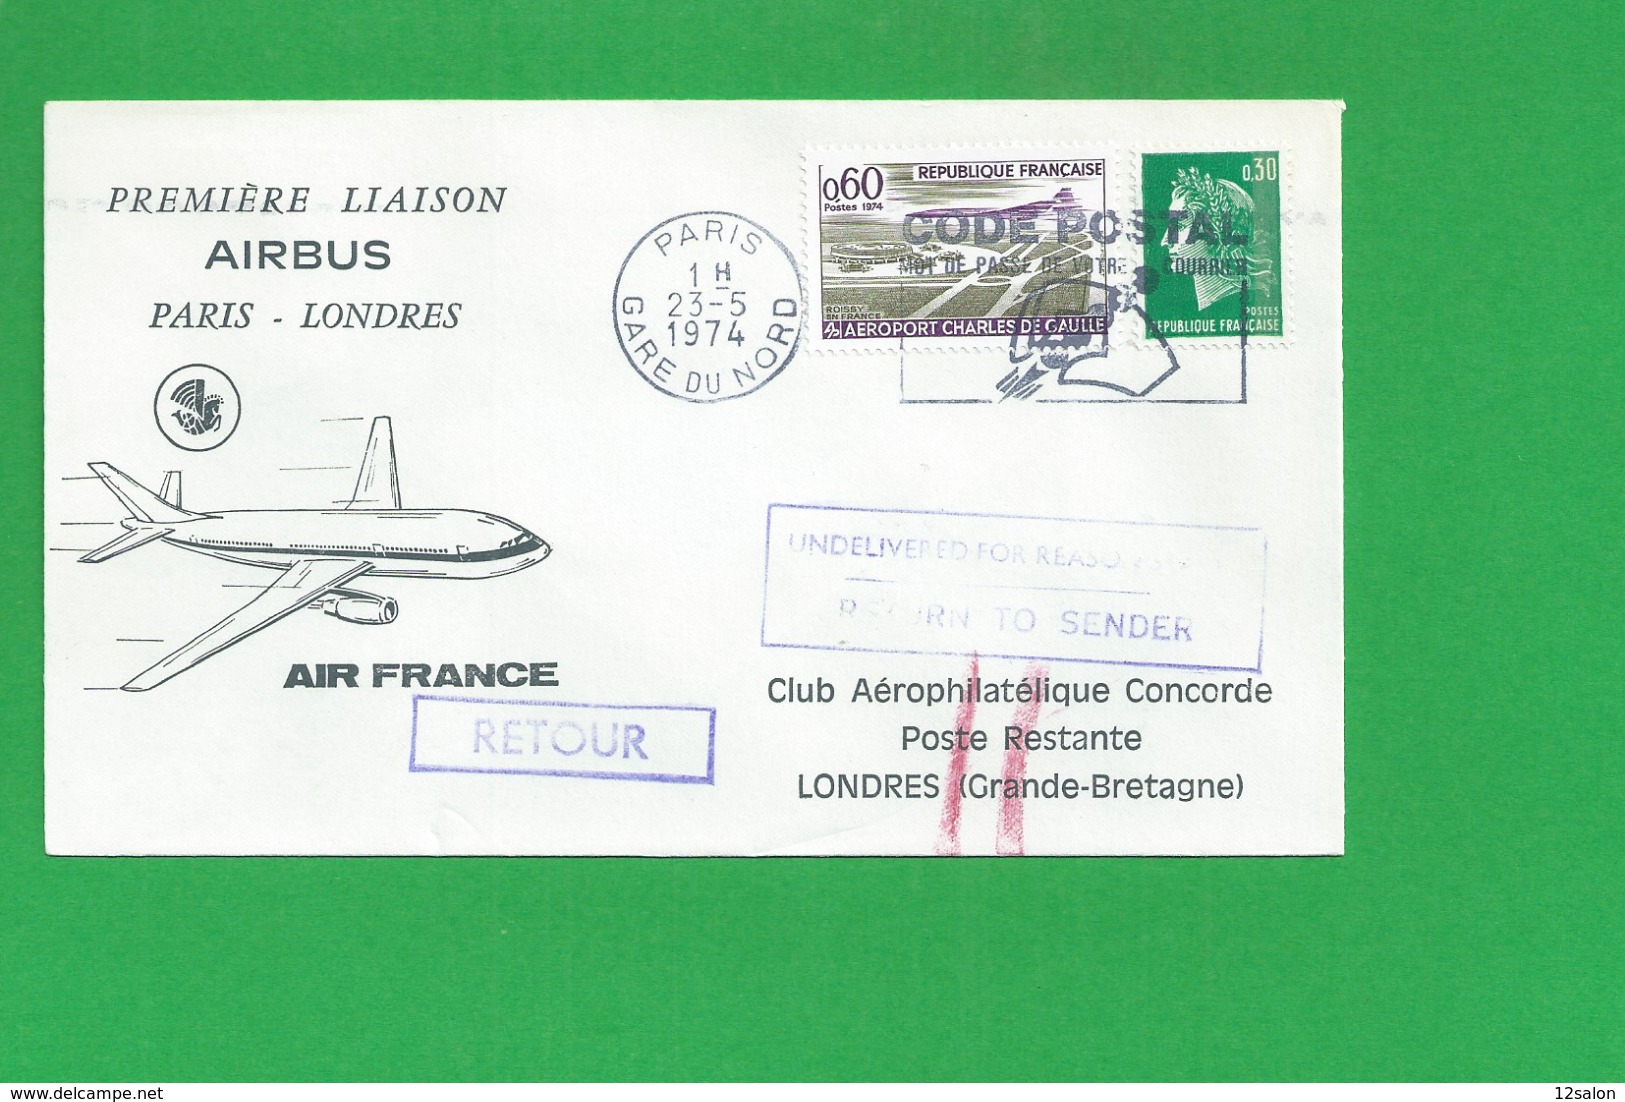 PREMIERE LIAISON AIRBUS PARIS LONDRES - 1960-.... Briefe & Dokumente